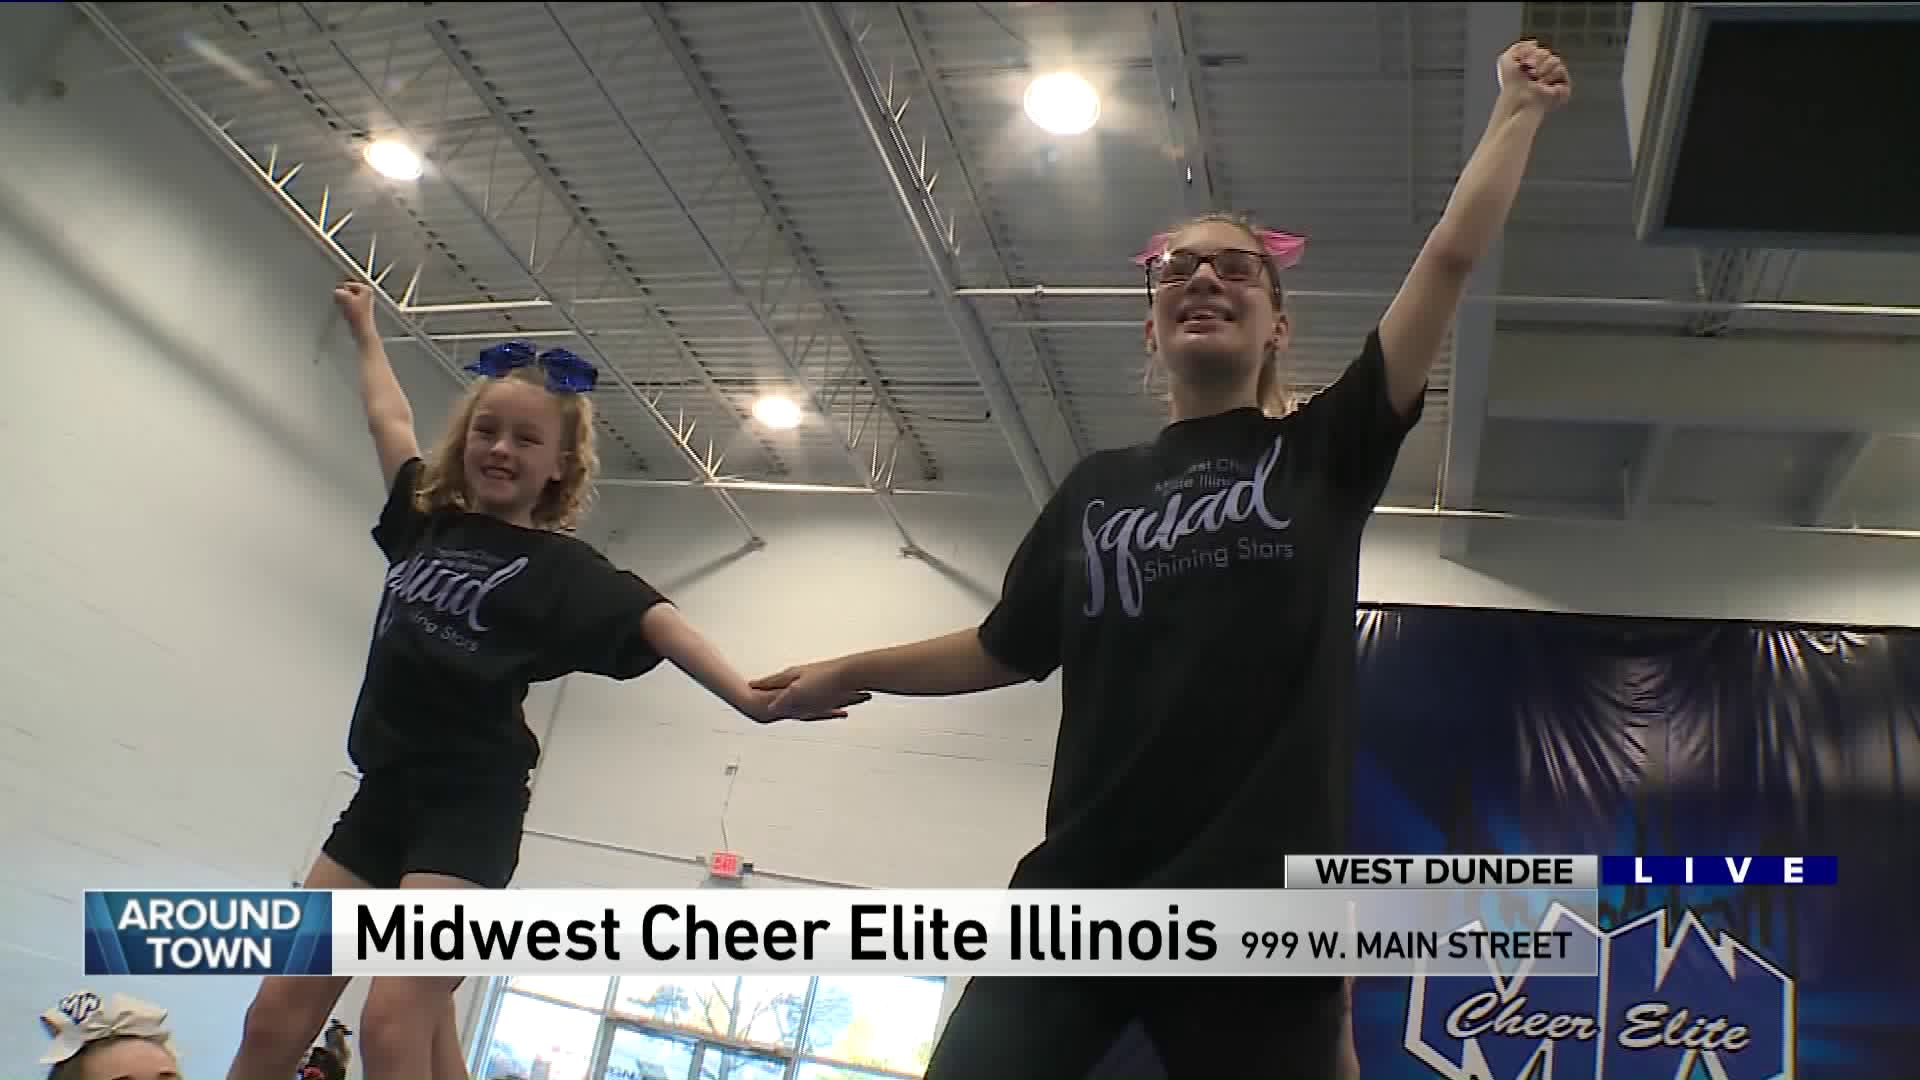 Around Town tumbles with Midwest Cheer Elite Illinois